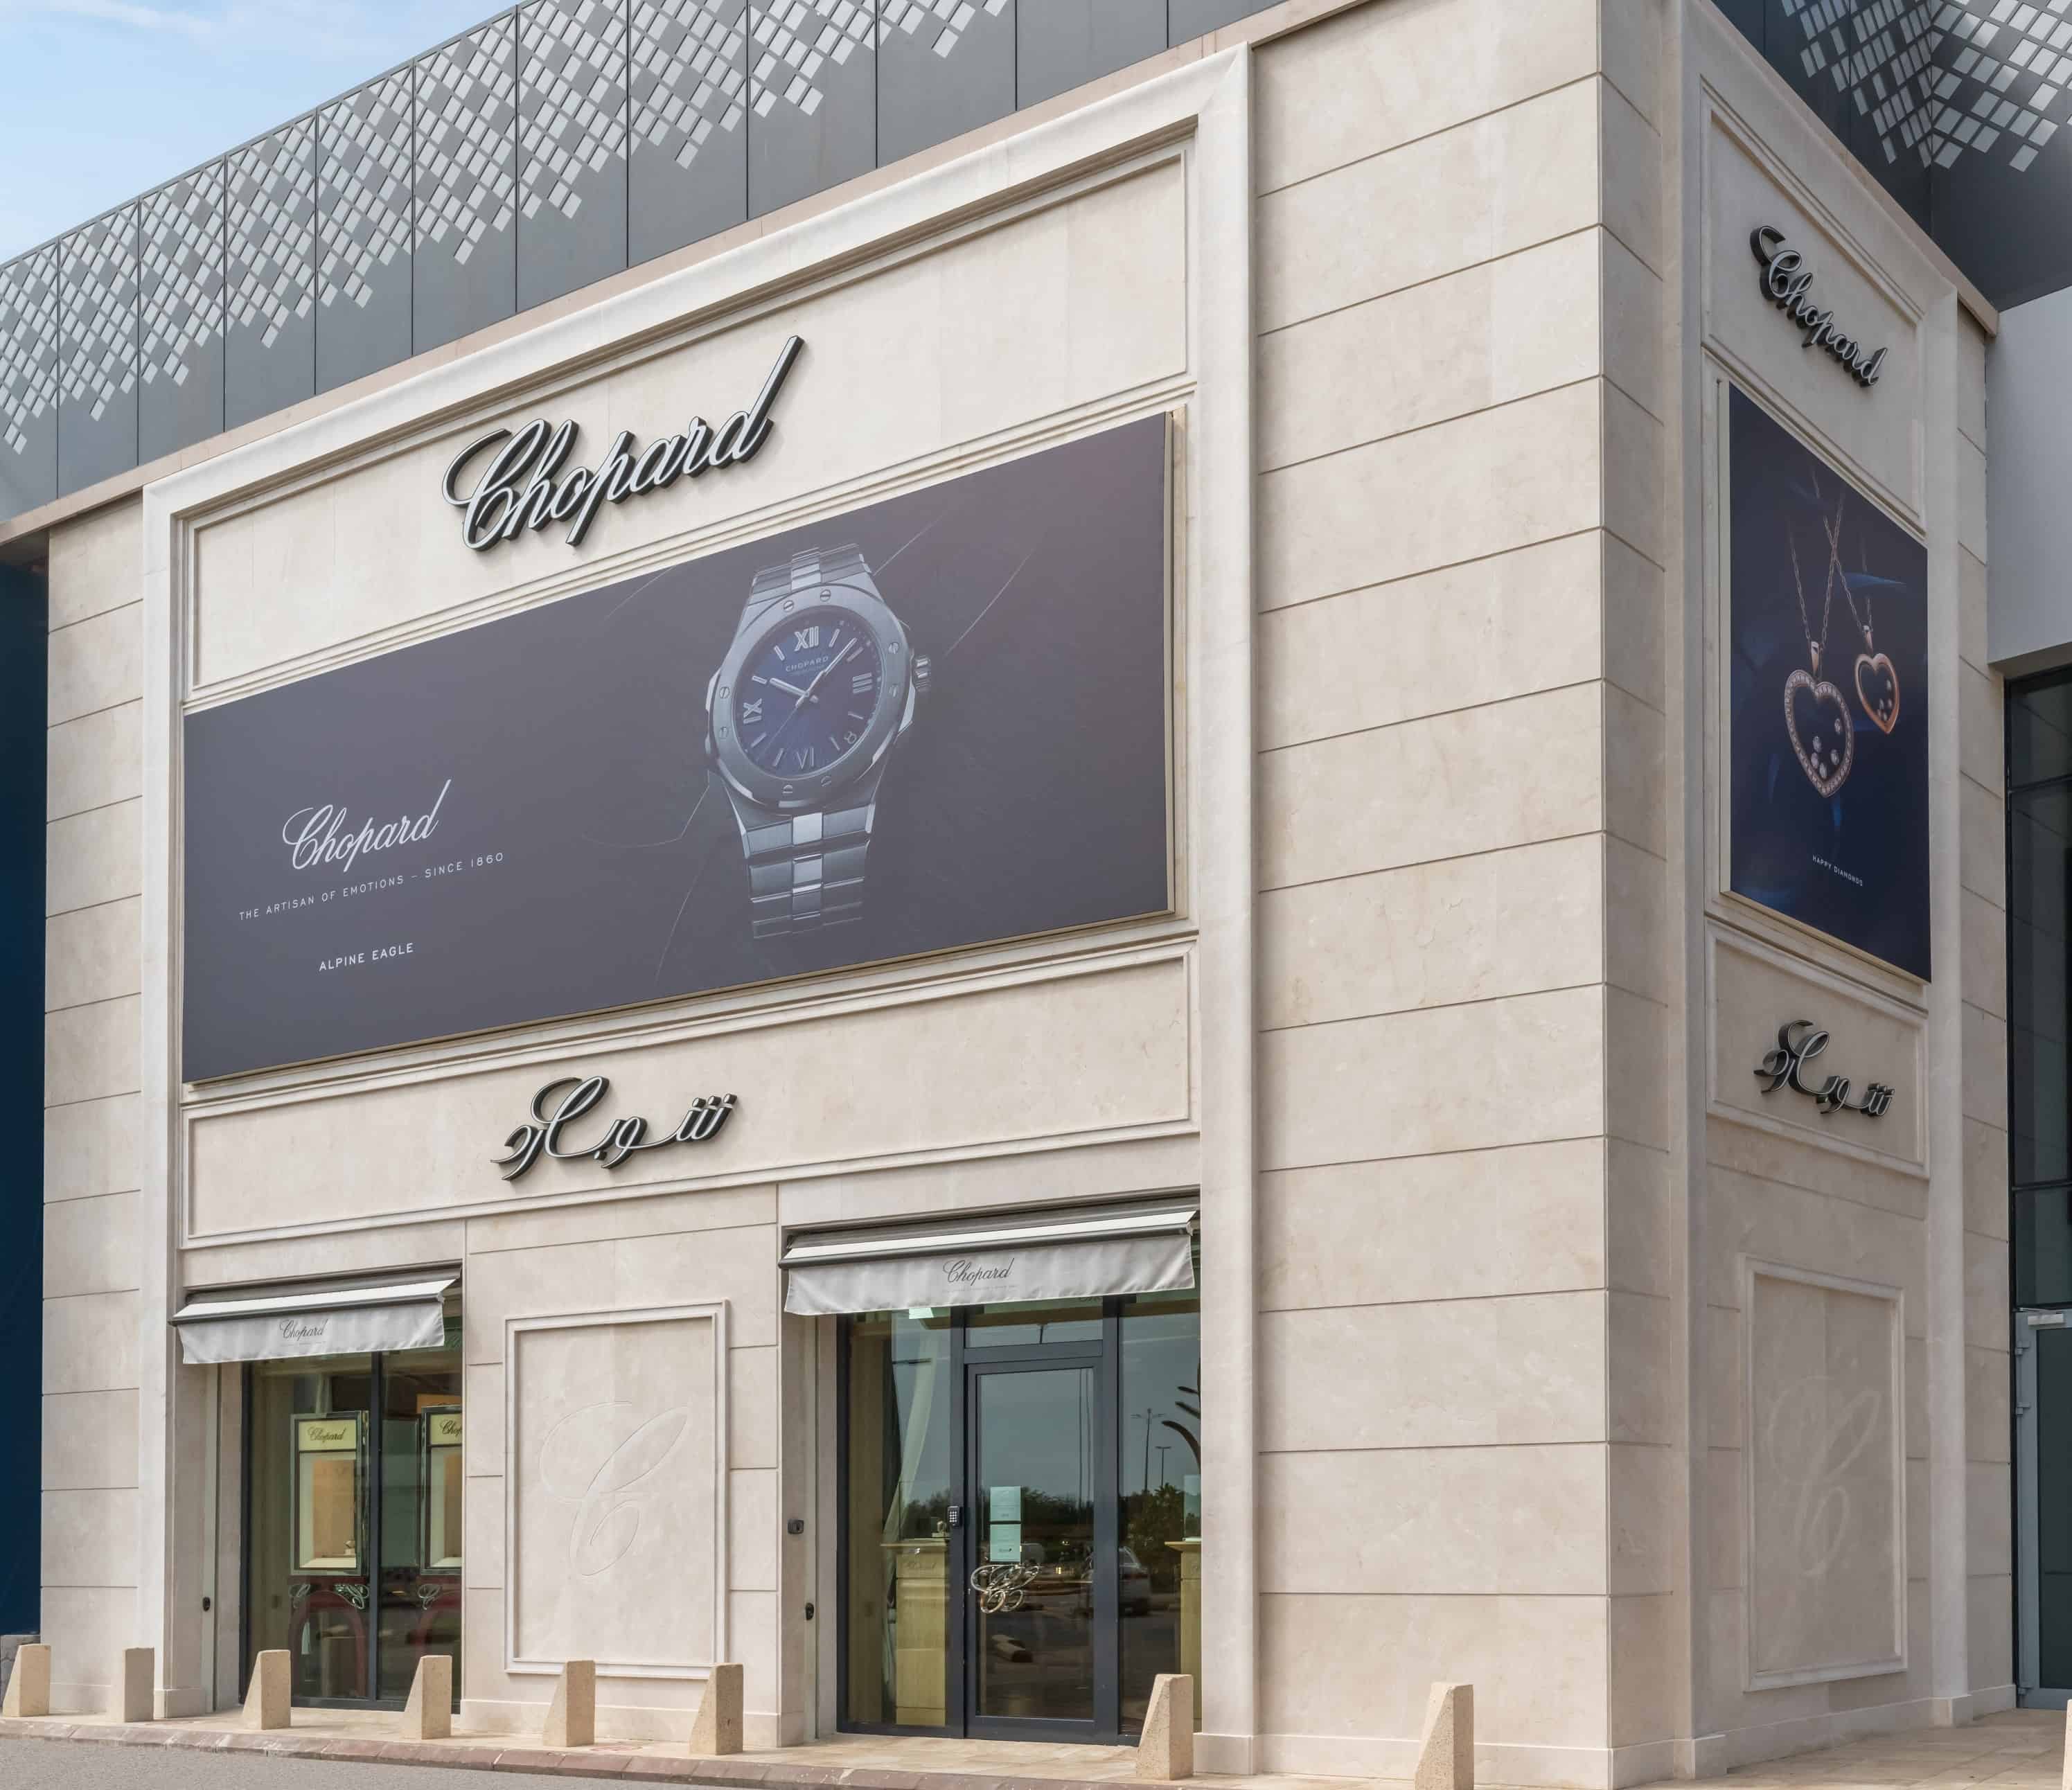 У сарадњи са Унитед Аттар Цомпани, Цхопард отвара нови изложбени простор у Ал-Басатеен центру у Краљевини Саудијској Арабији